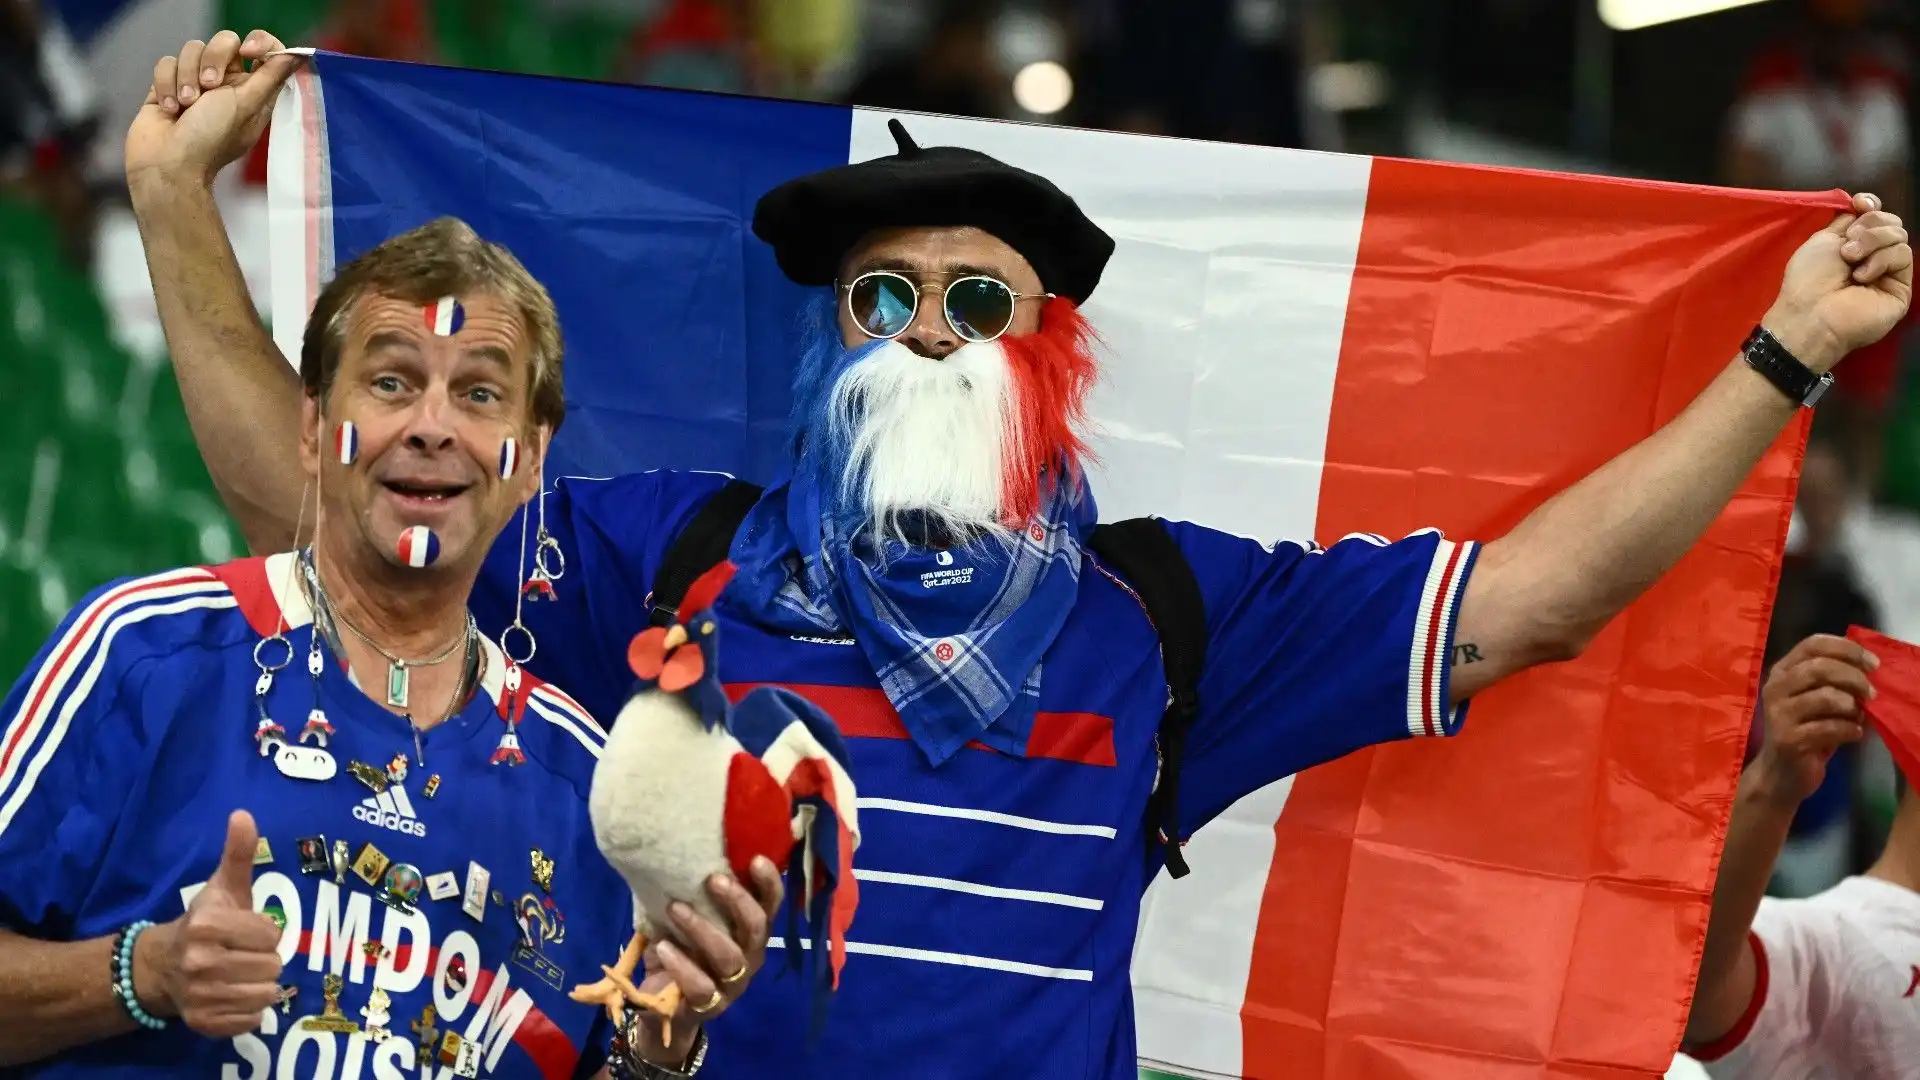 La Francia, nonostante l'assenza di Benzema, è tra le favorite per la vittoria finale